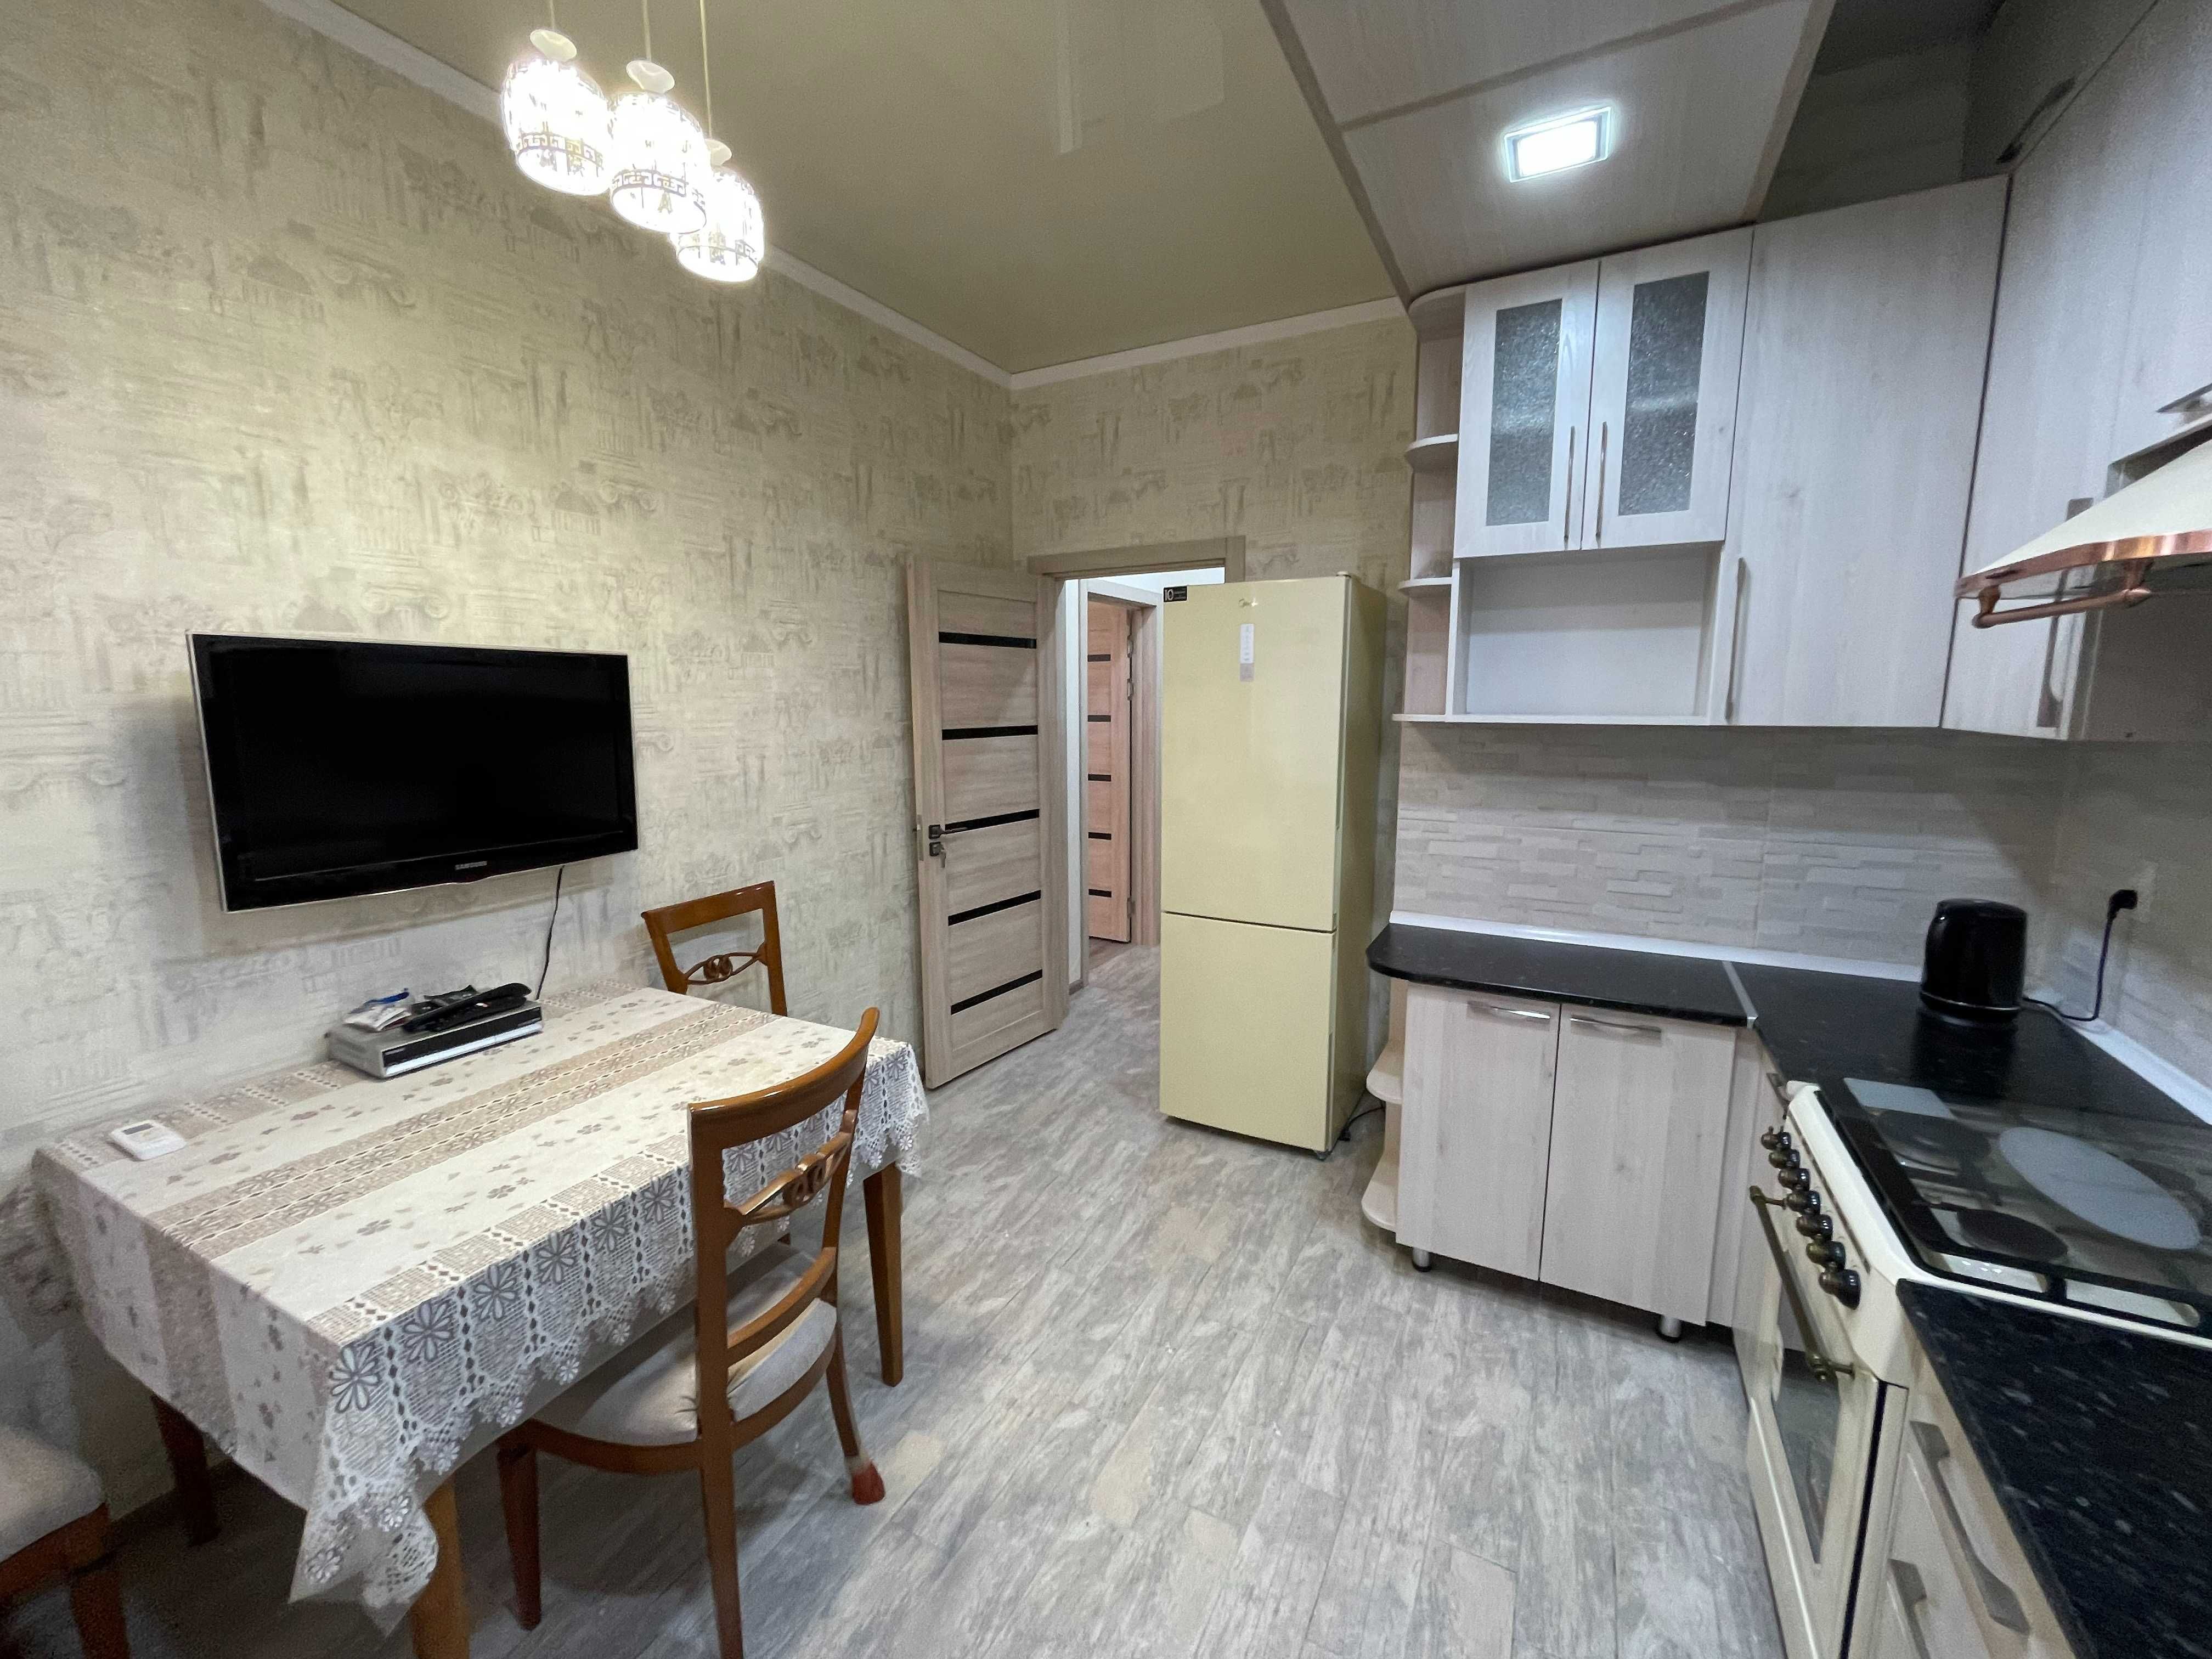 Сдается в аренду квартира 2 комнатная в Новостройке ул.Нукус